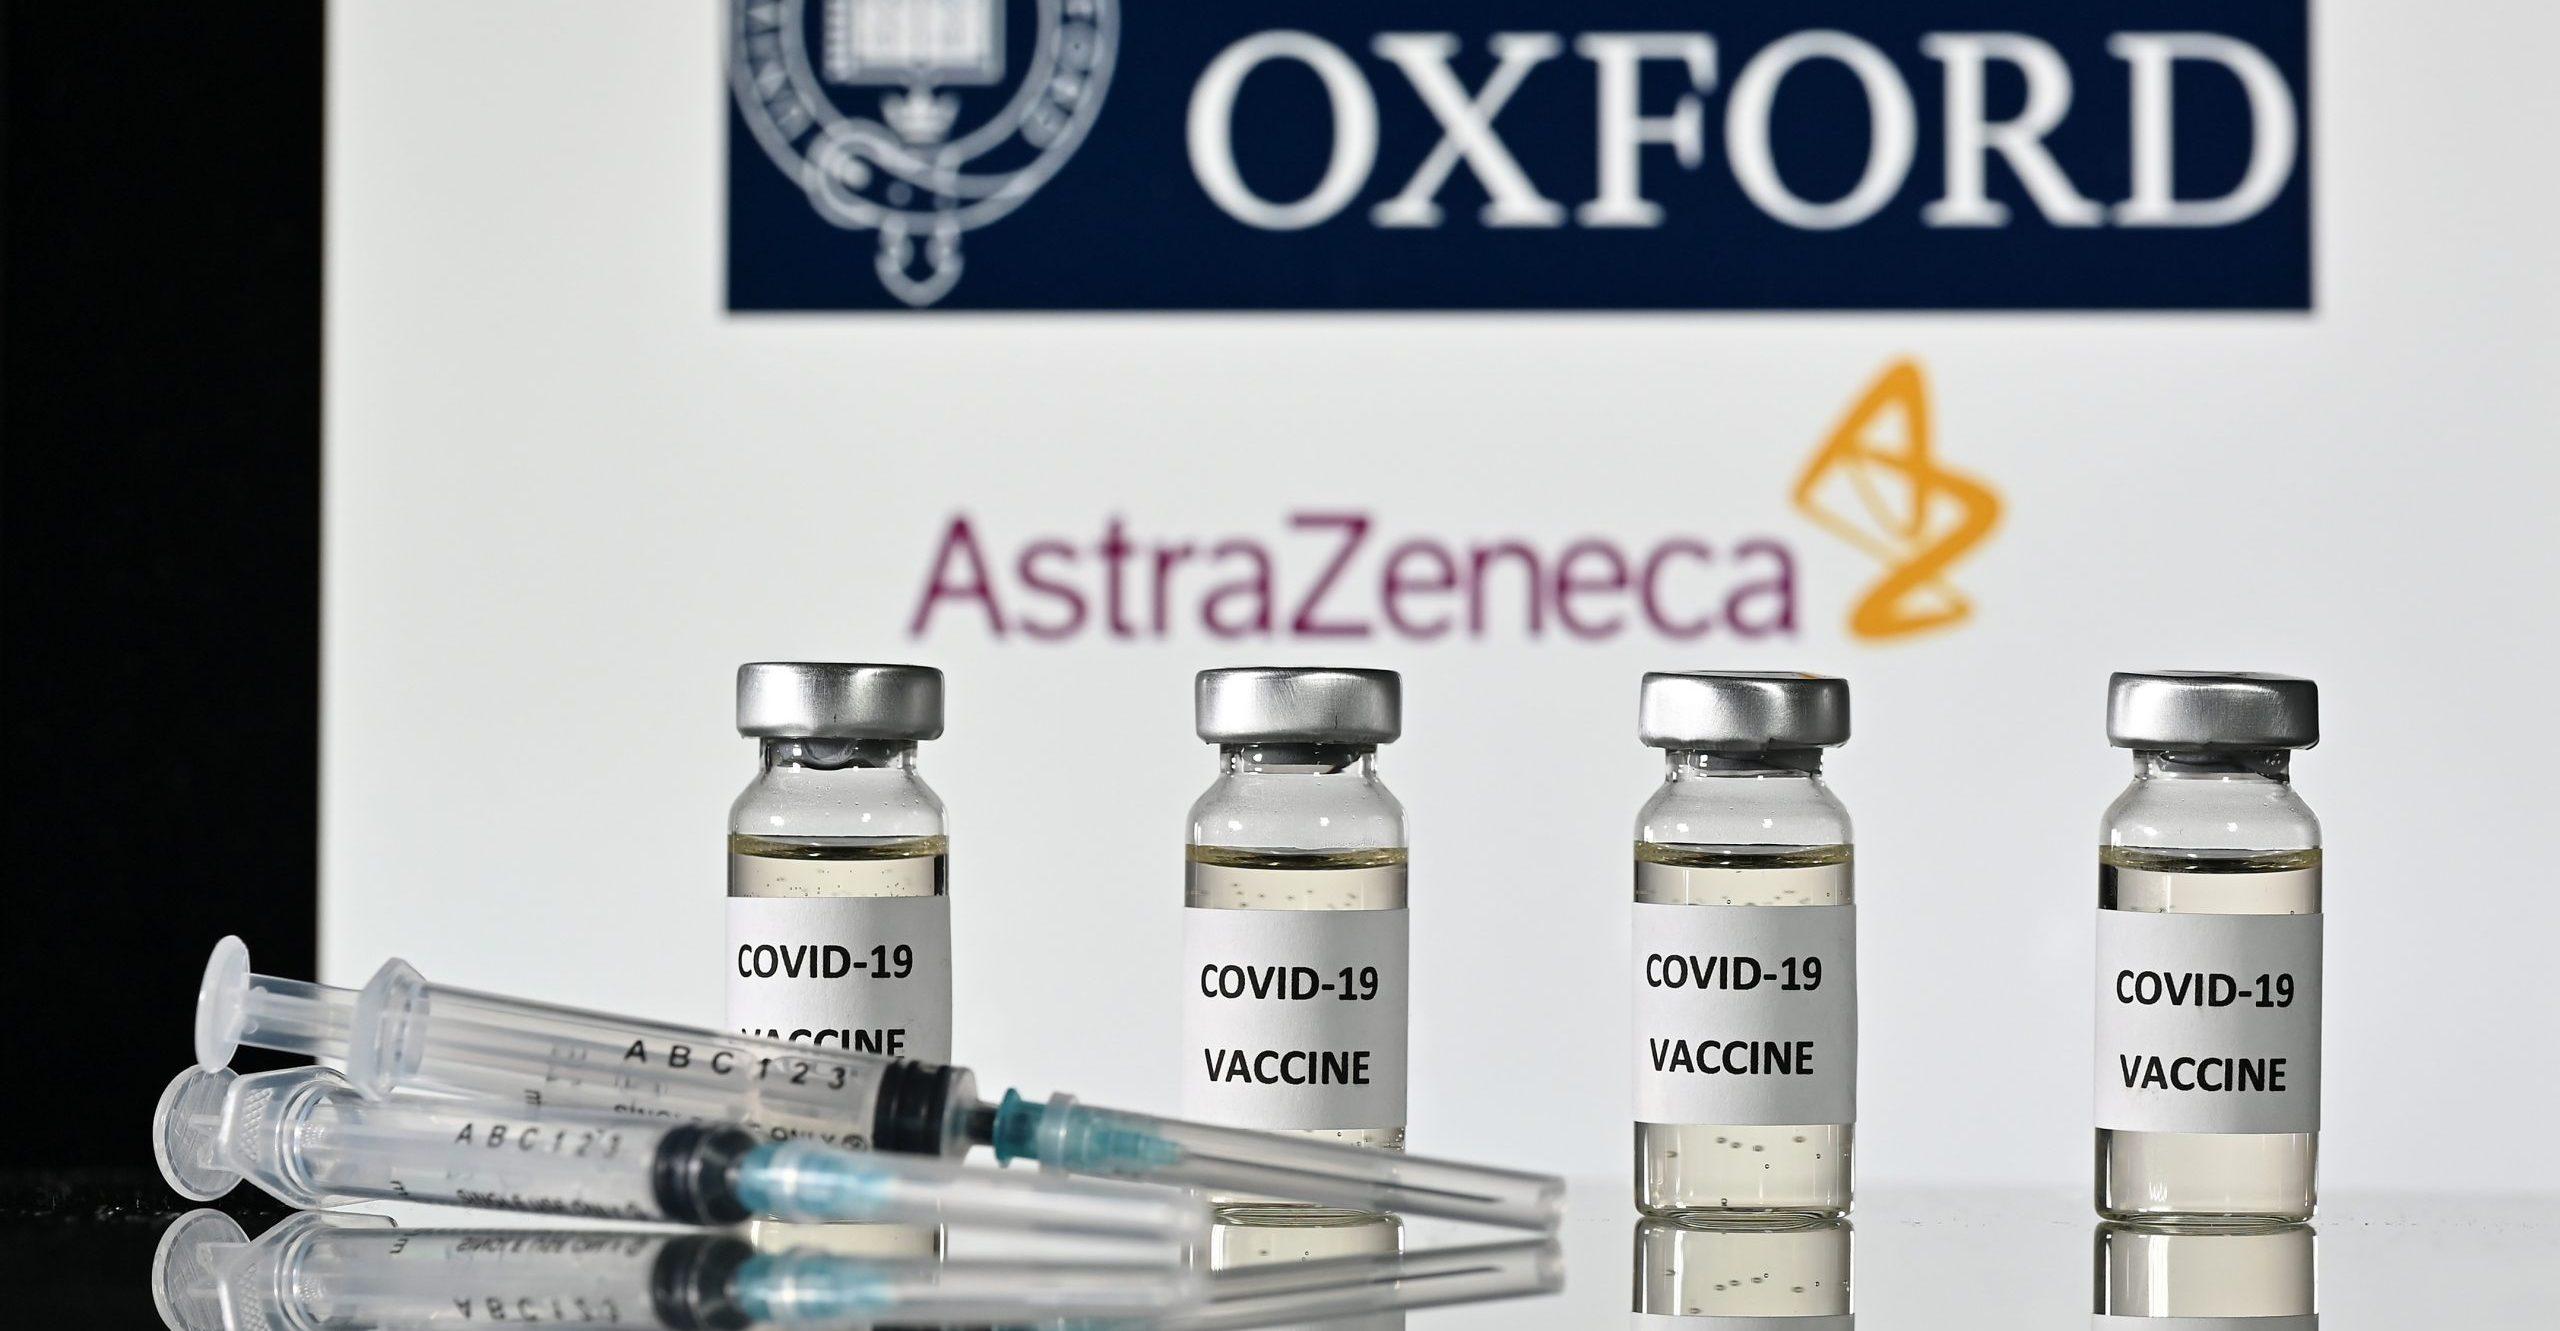 Vacuna de Astrazeneca tiene una eficacia de 70% contra la COVID, según sus ensayos